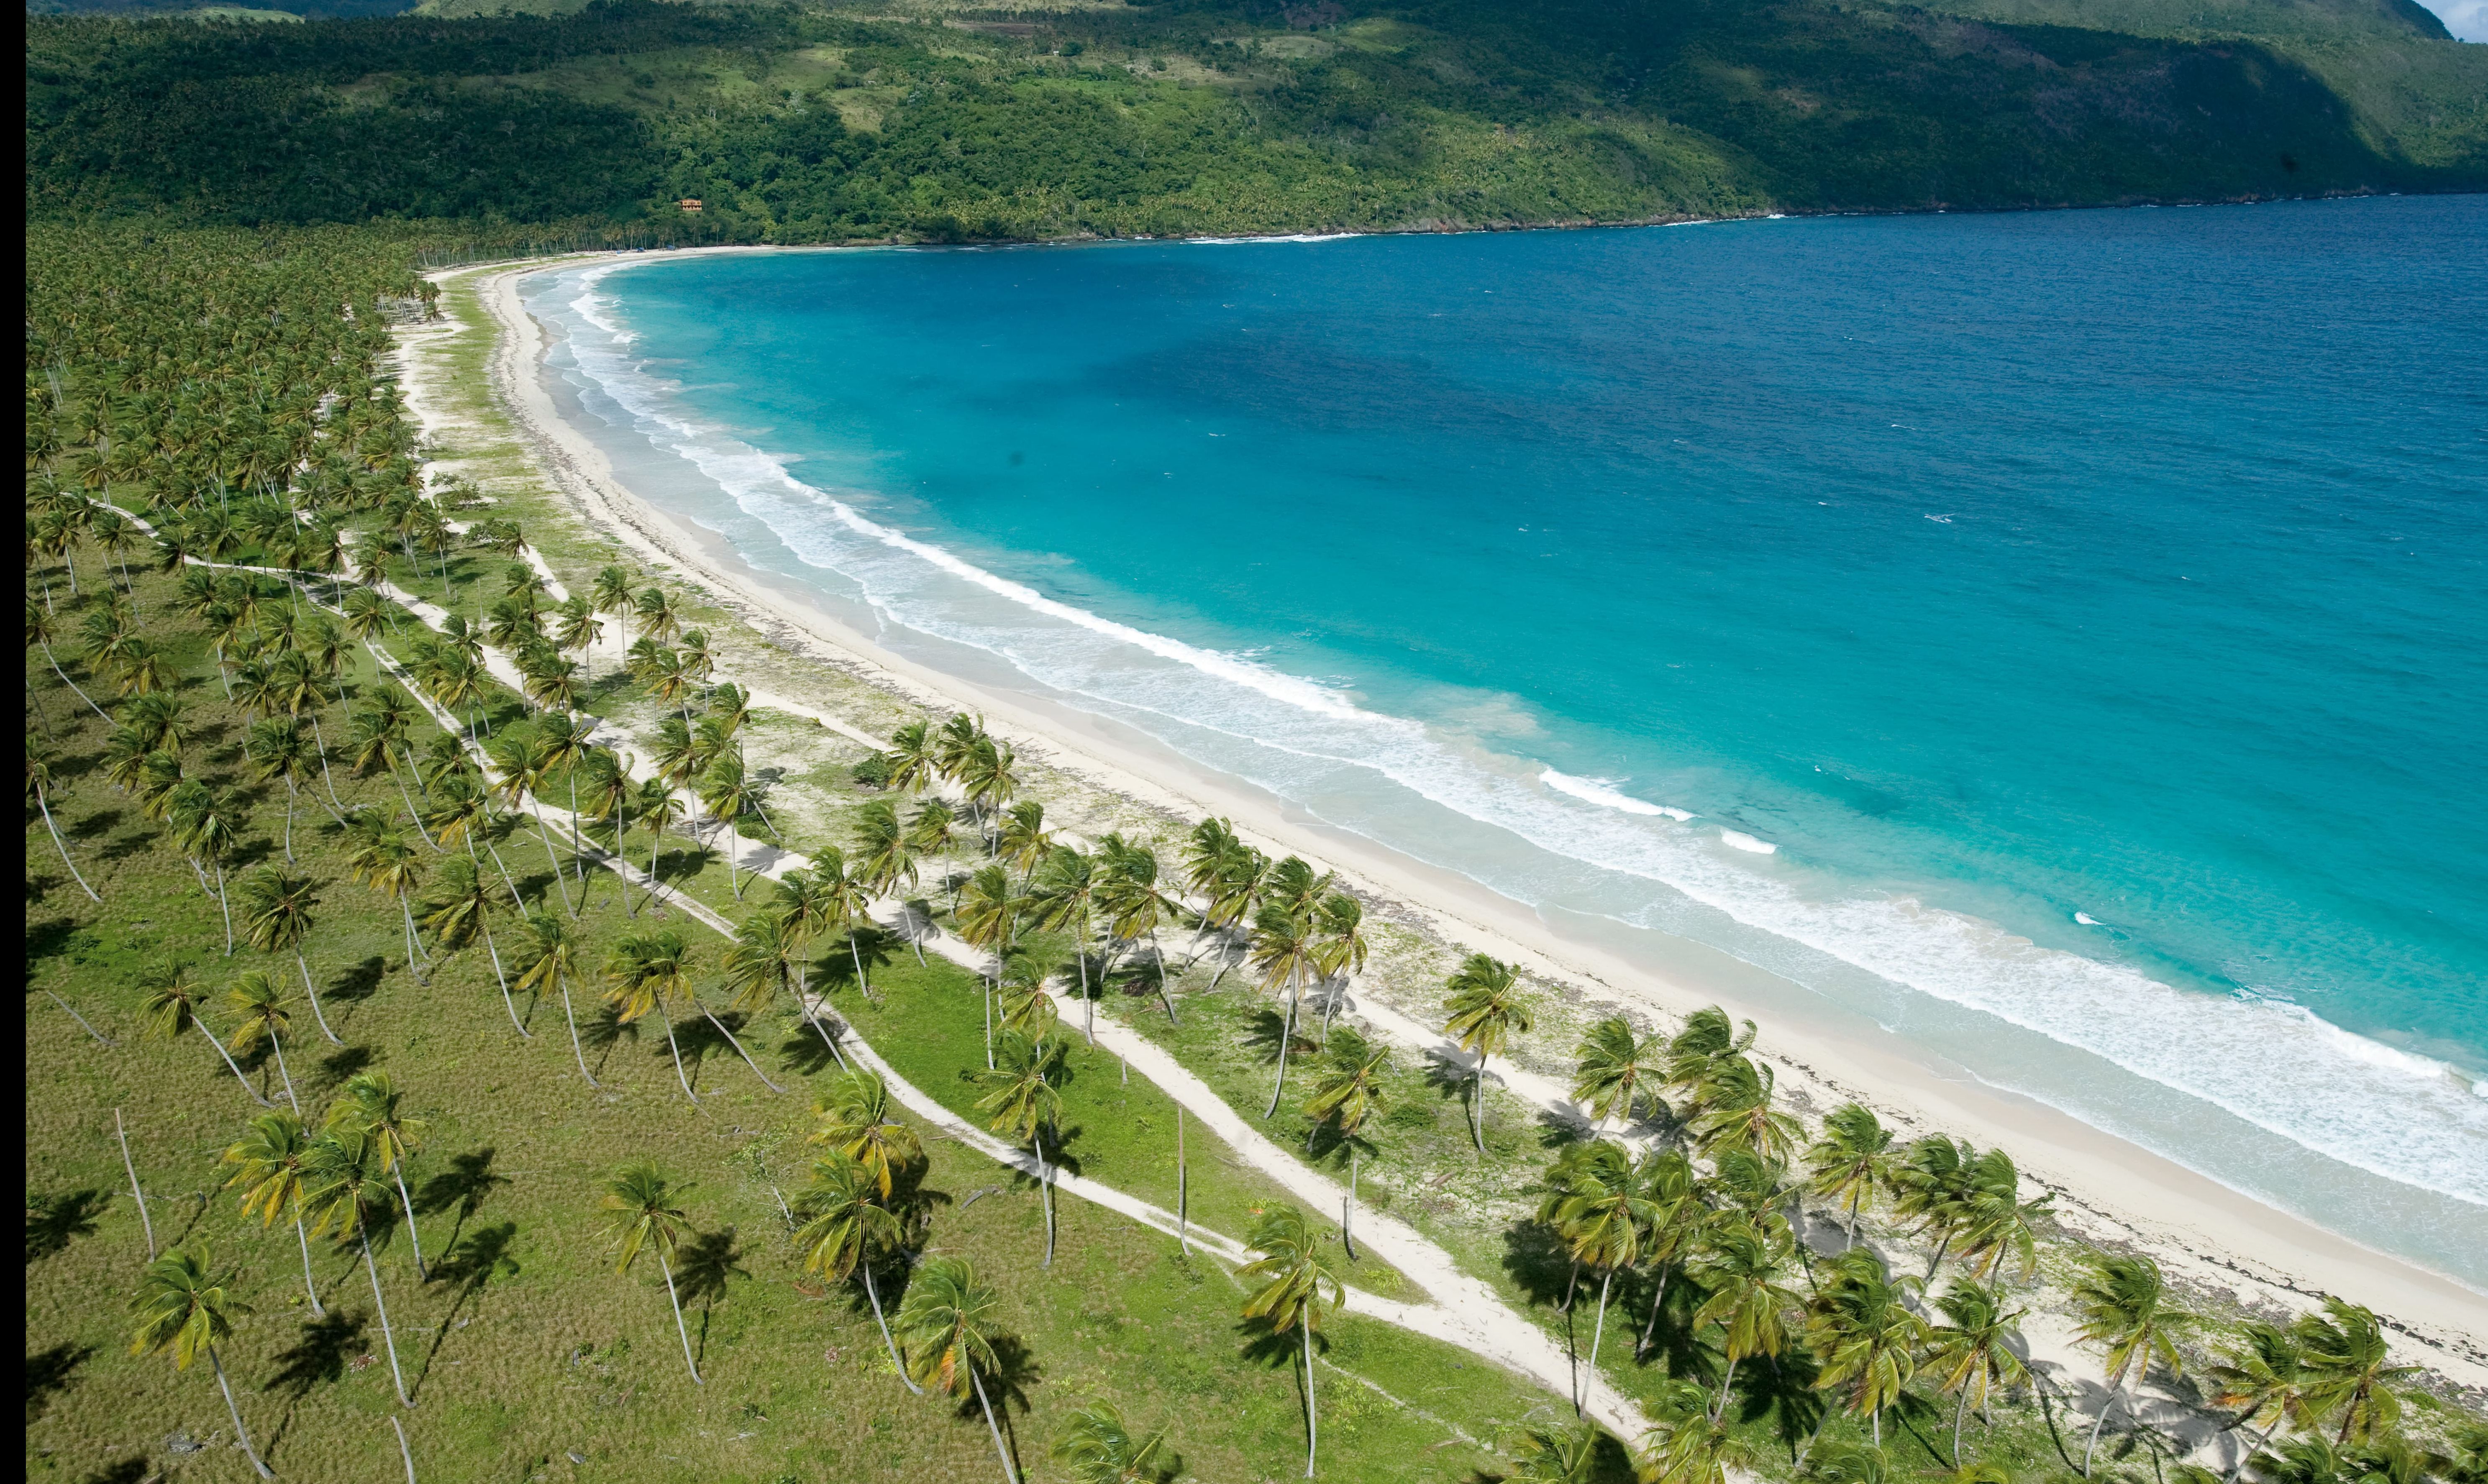 Plan de desarrollo económico y local de la “Joya del Caribe”, Samaná